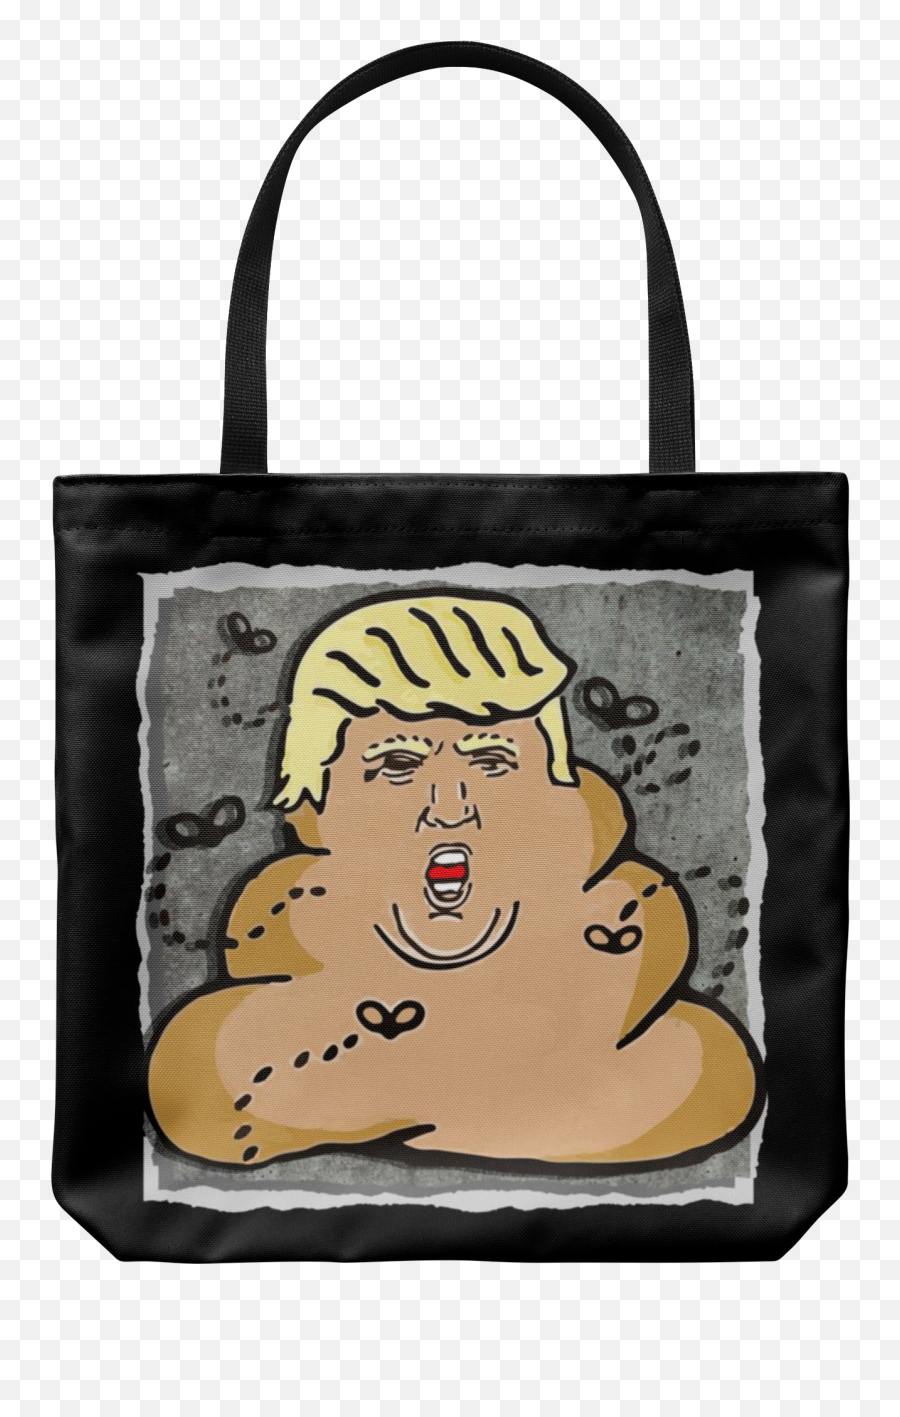 Trump Poop Emoji - Dump Trump,Emoji Tote Bag